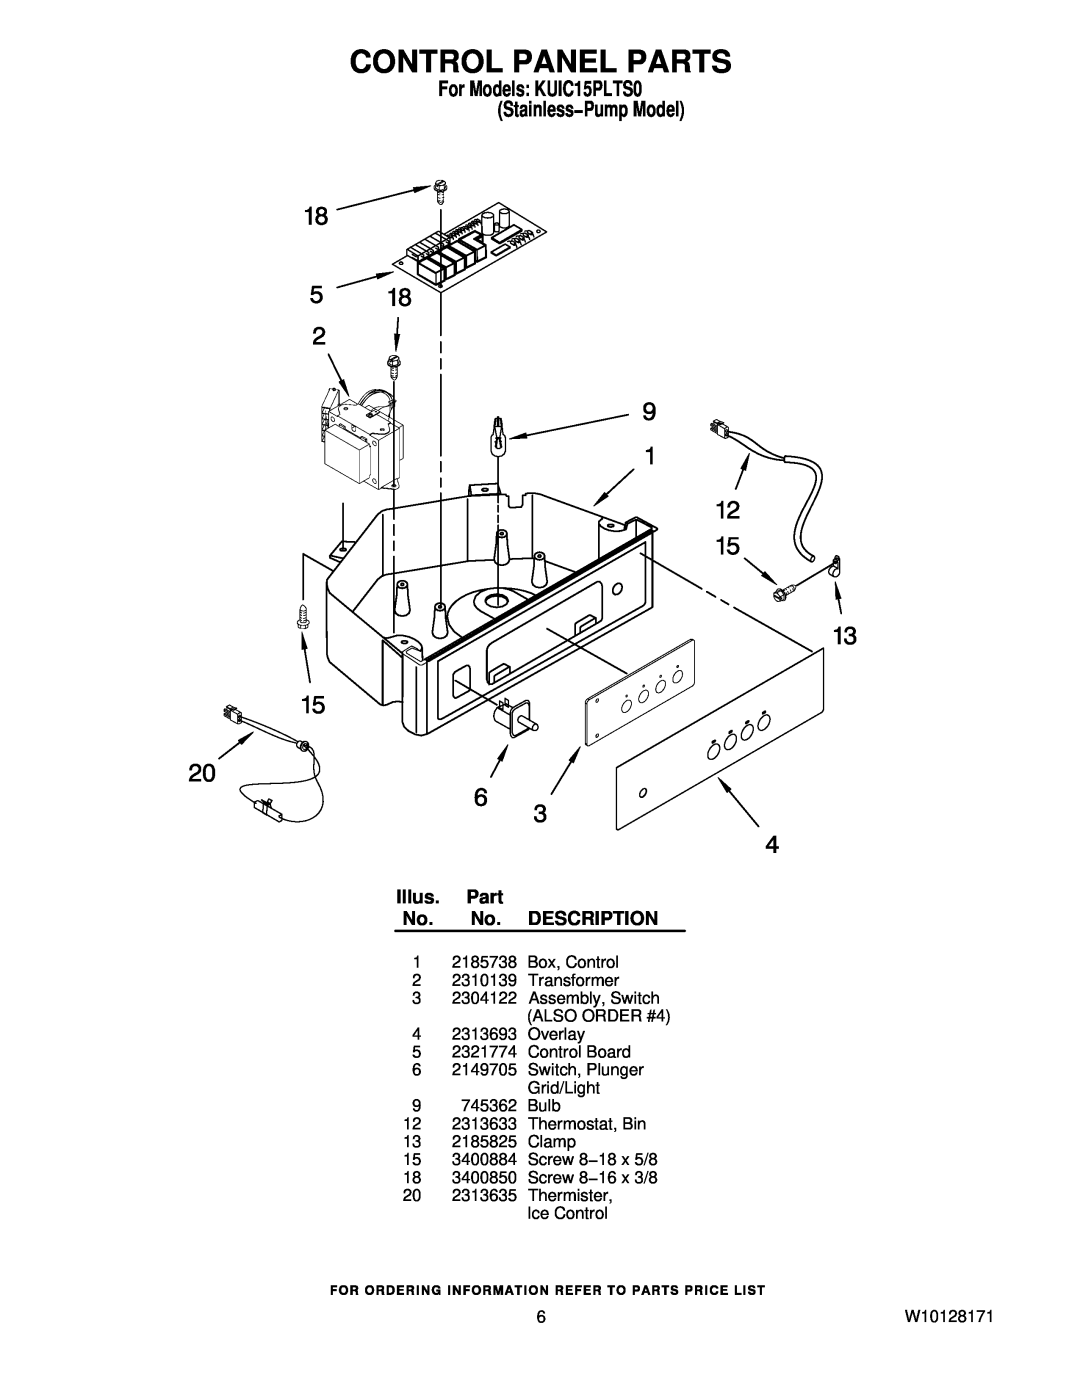 KitchenAid manual Control Panel Parts, For Models KUIC15PLTS0 Stainless−Pump Model, Illus. Part No. No. DESCRIPTION 